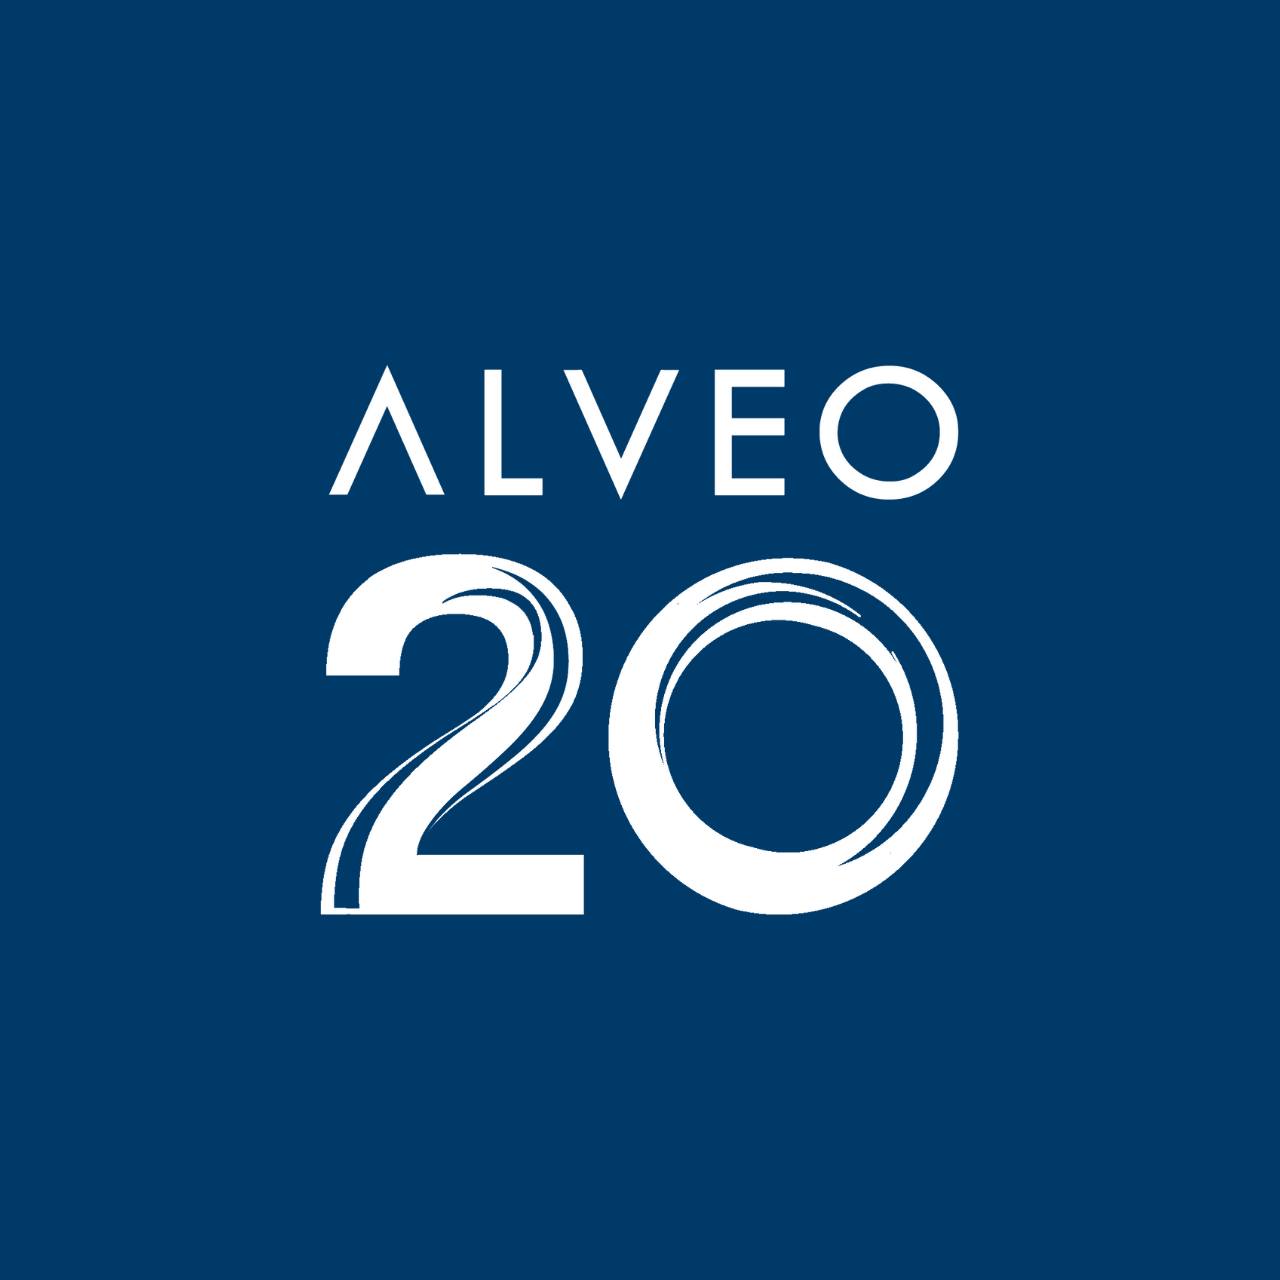 Alveo Land Corp.